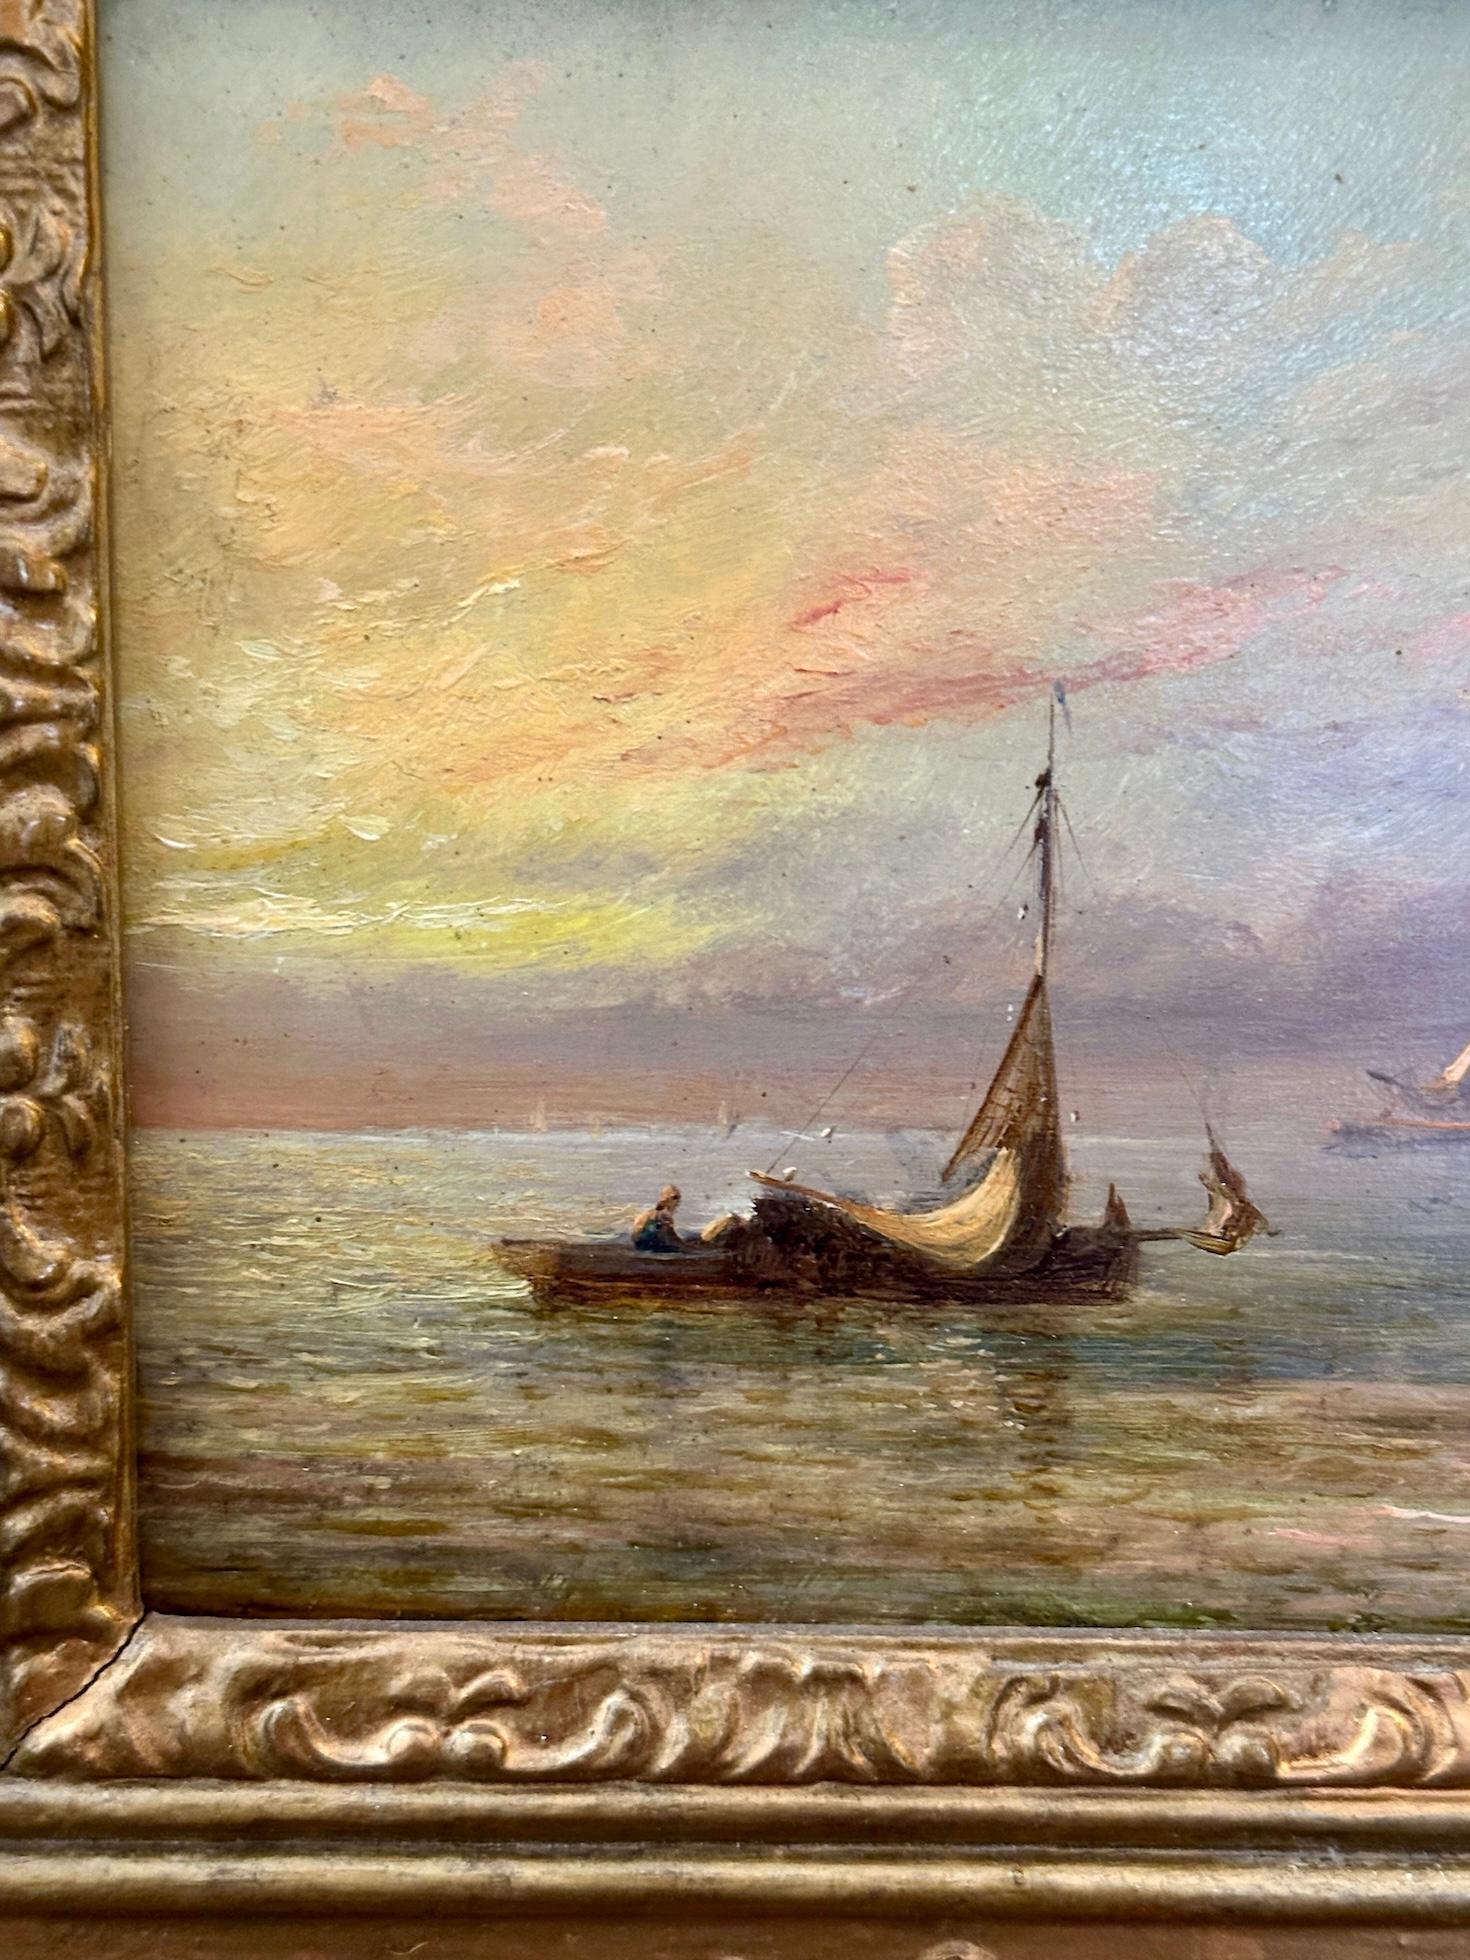 Adolphus Knell

Vignette de pêche anglaise du XIXe siècle à la mer.

Investir dans un bateau de pêche anglais du XIXe siècle capturé en mer vers 1880 par Adolphus Knell, avec le soleil se levant ou se couchant, c'est bien plus qu'une œuvre d'art :